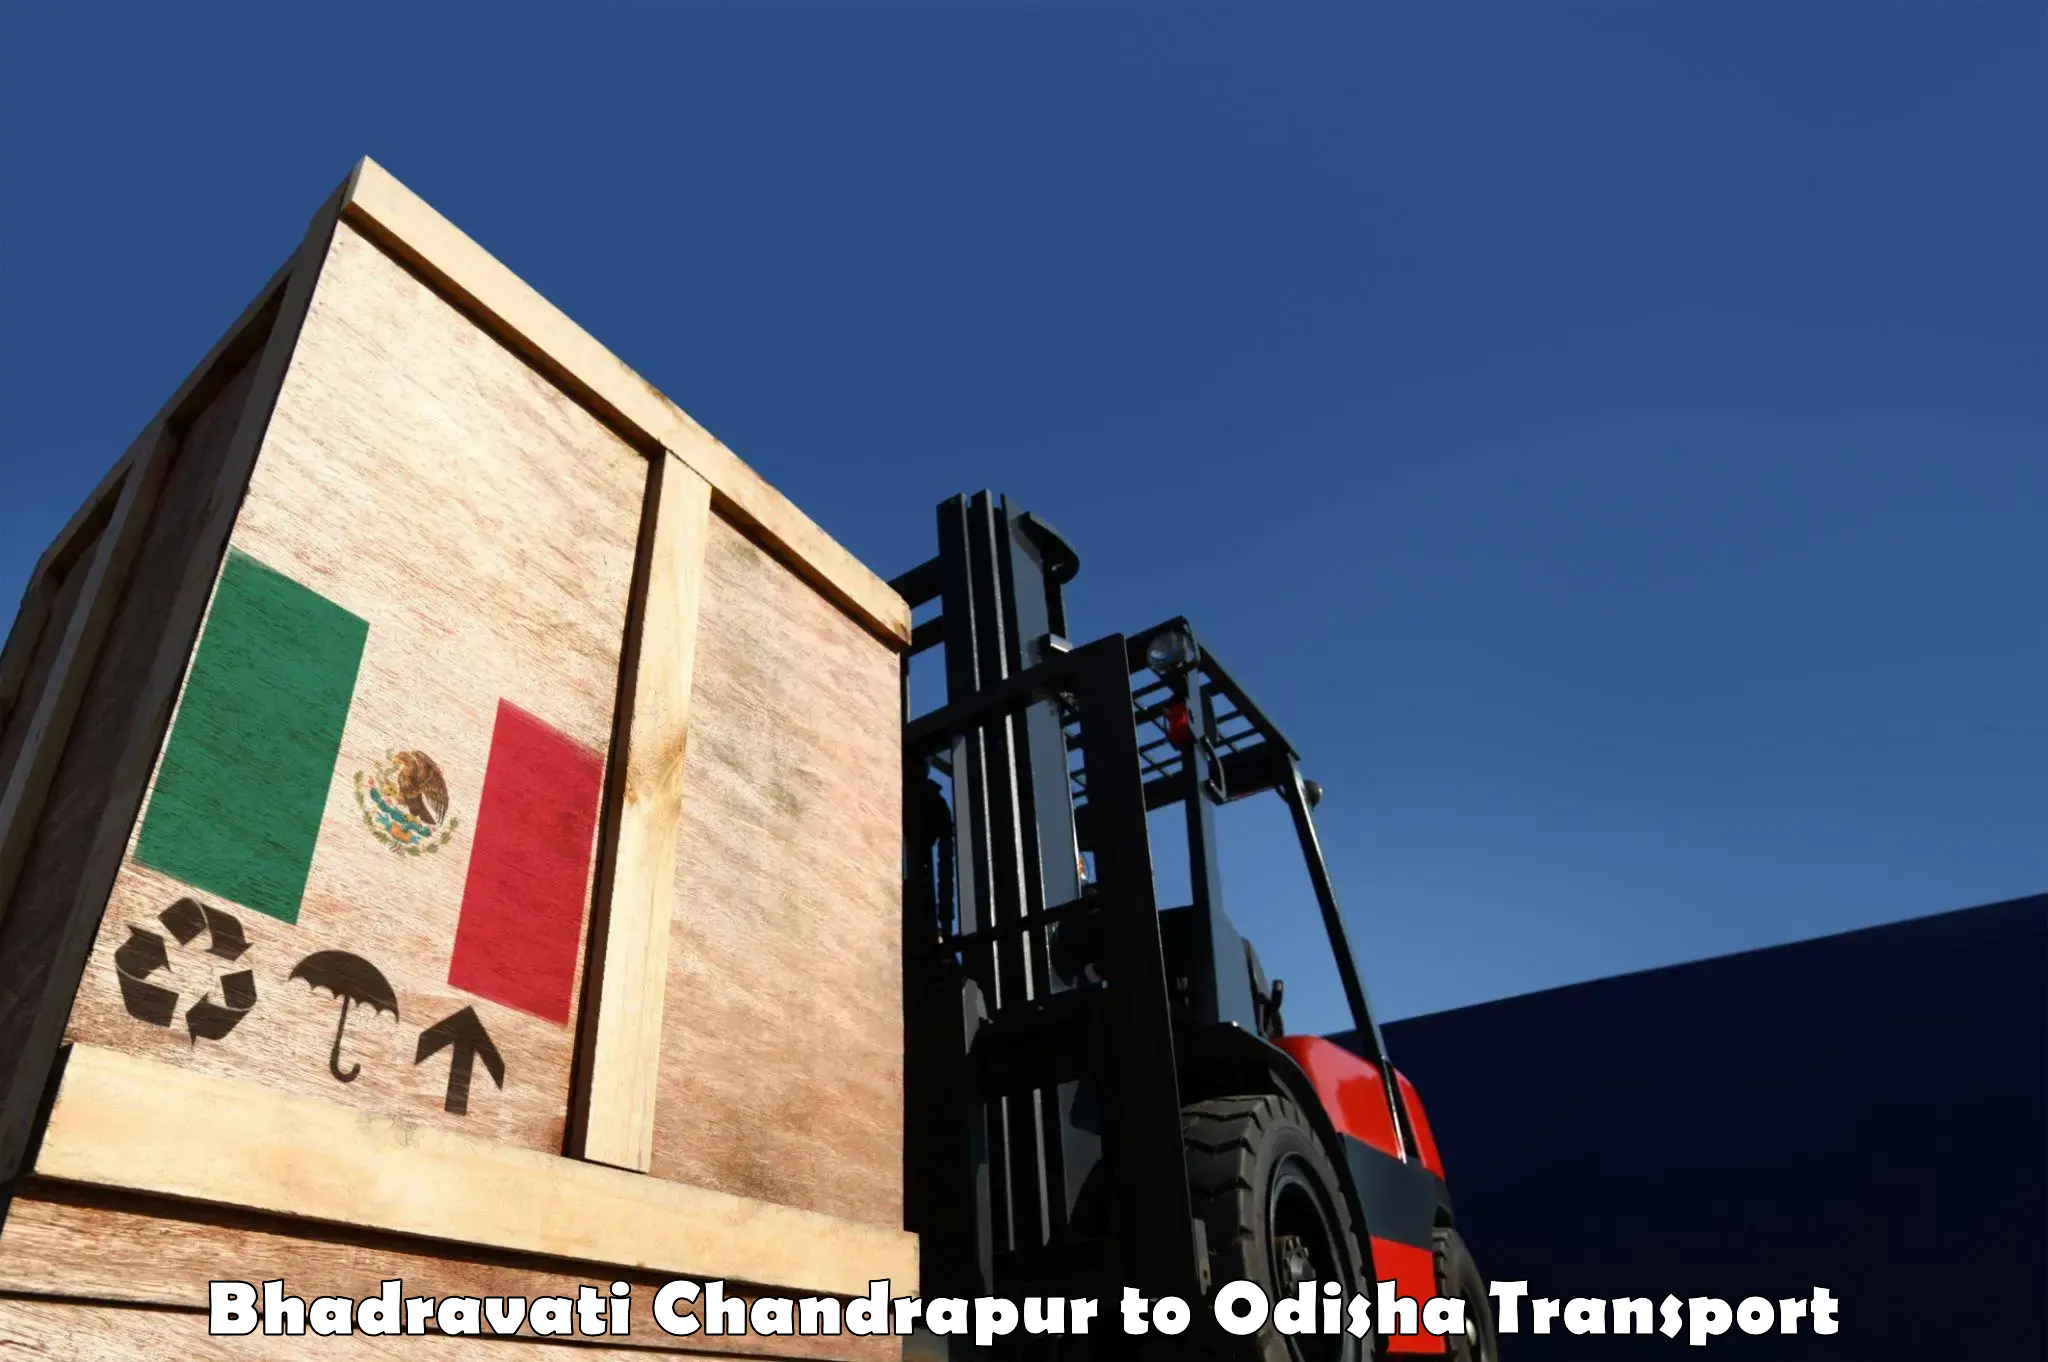 Part load transport service in India Bhadravati Chandrapur to Kendujhar